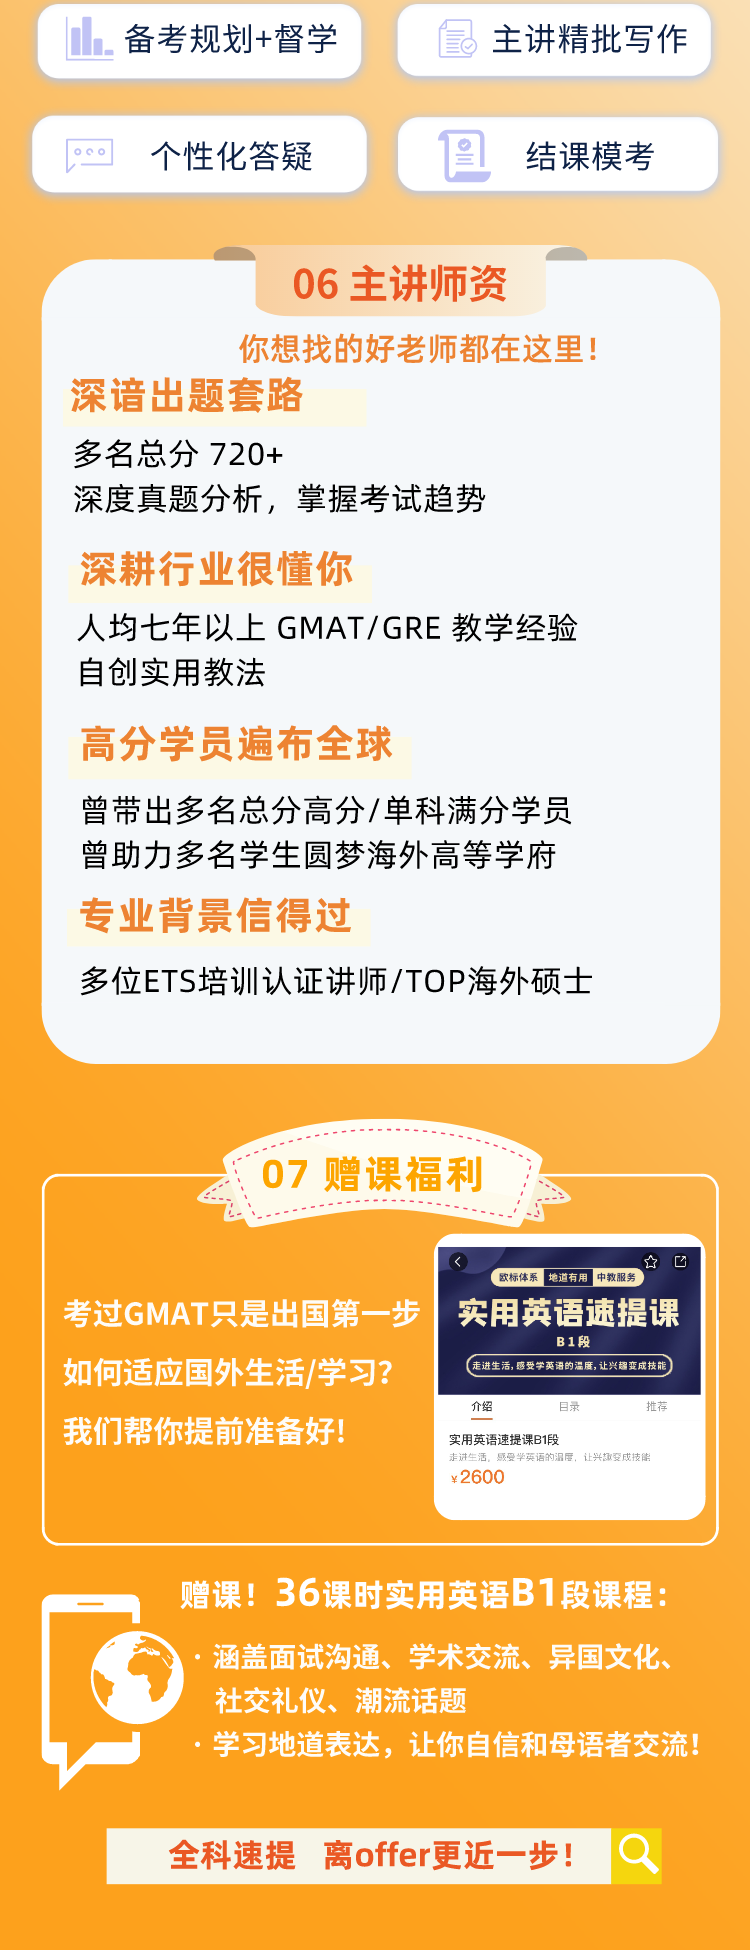 https://simg01.gaodunwangxiao.com/uploadfiles/product-center/202211/18/e084f_20221118154659.png